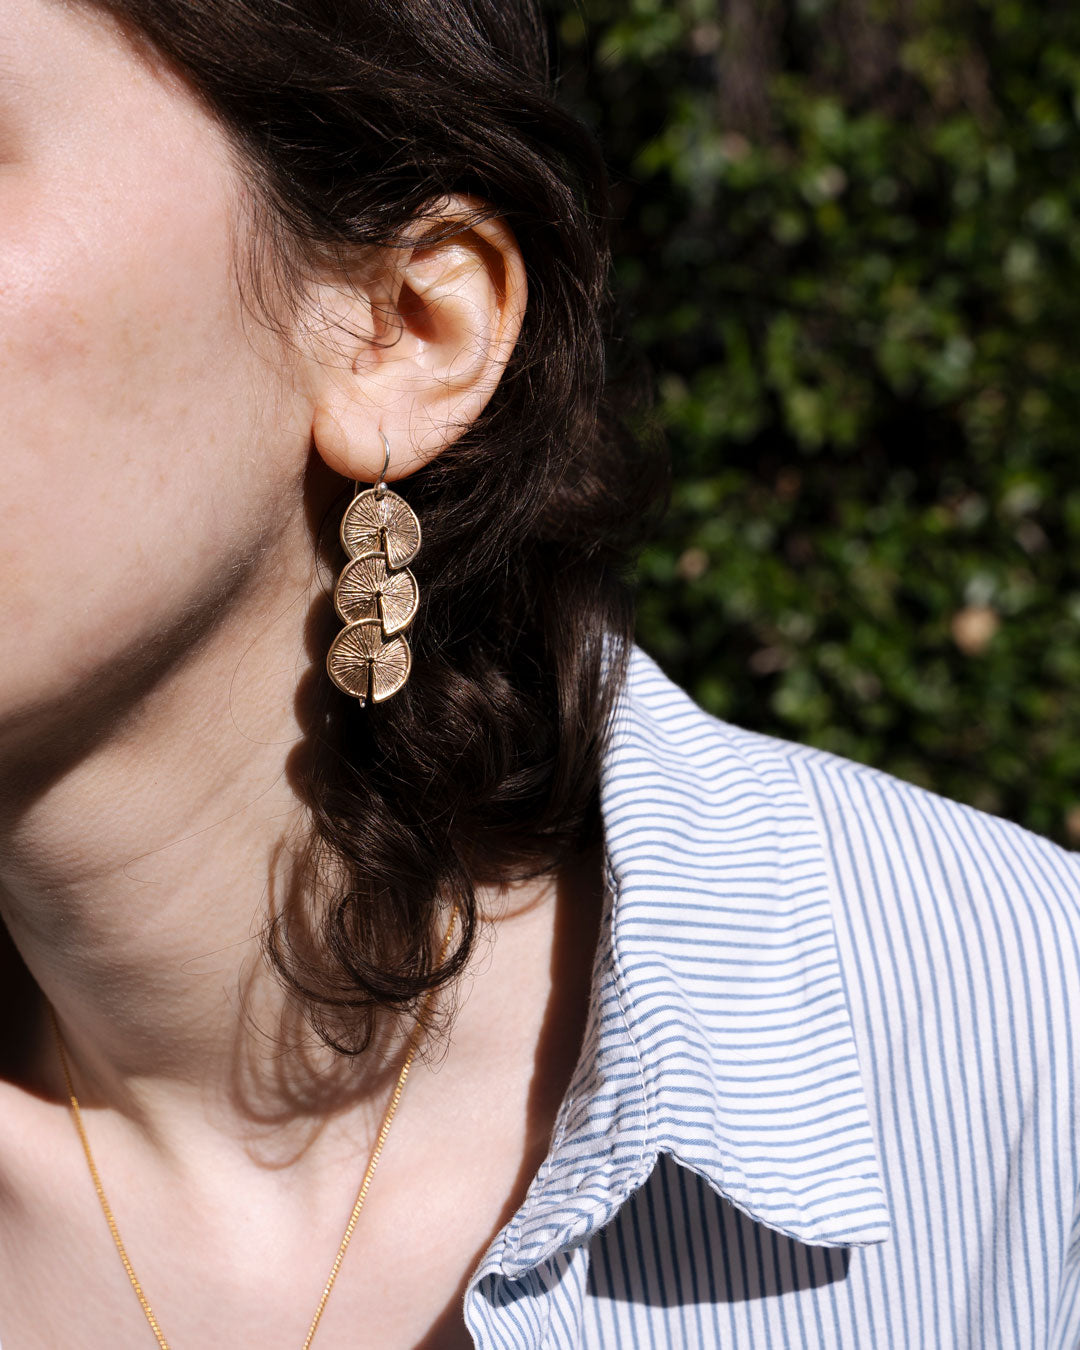 Celestine by Zoe _ Grappolo Pendant Earrings